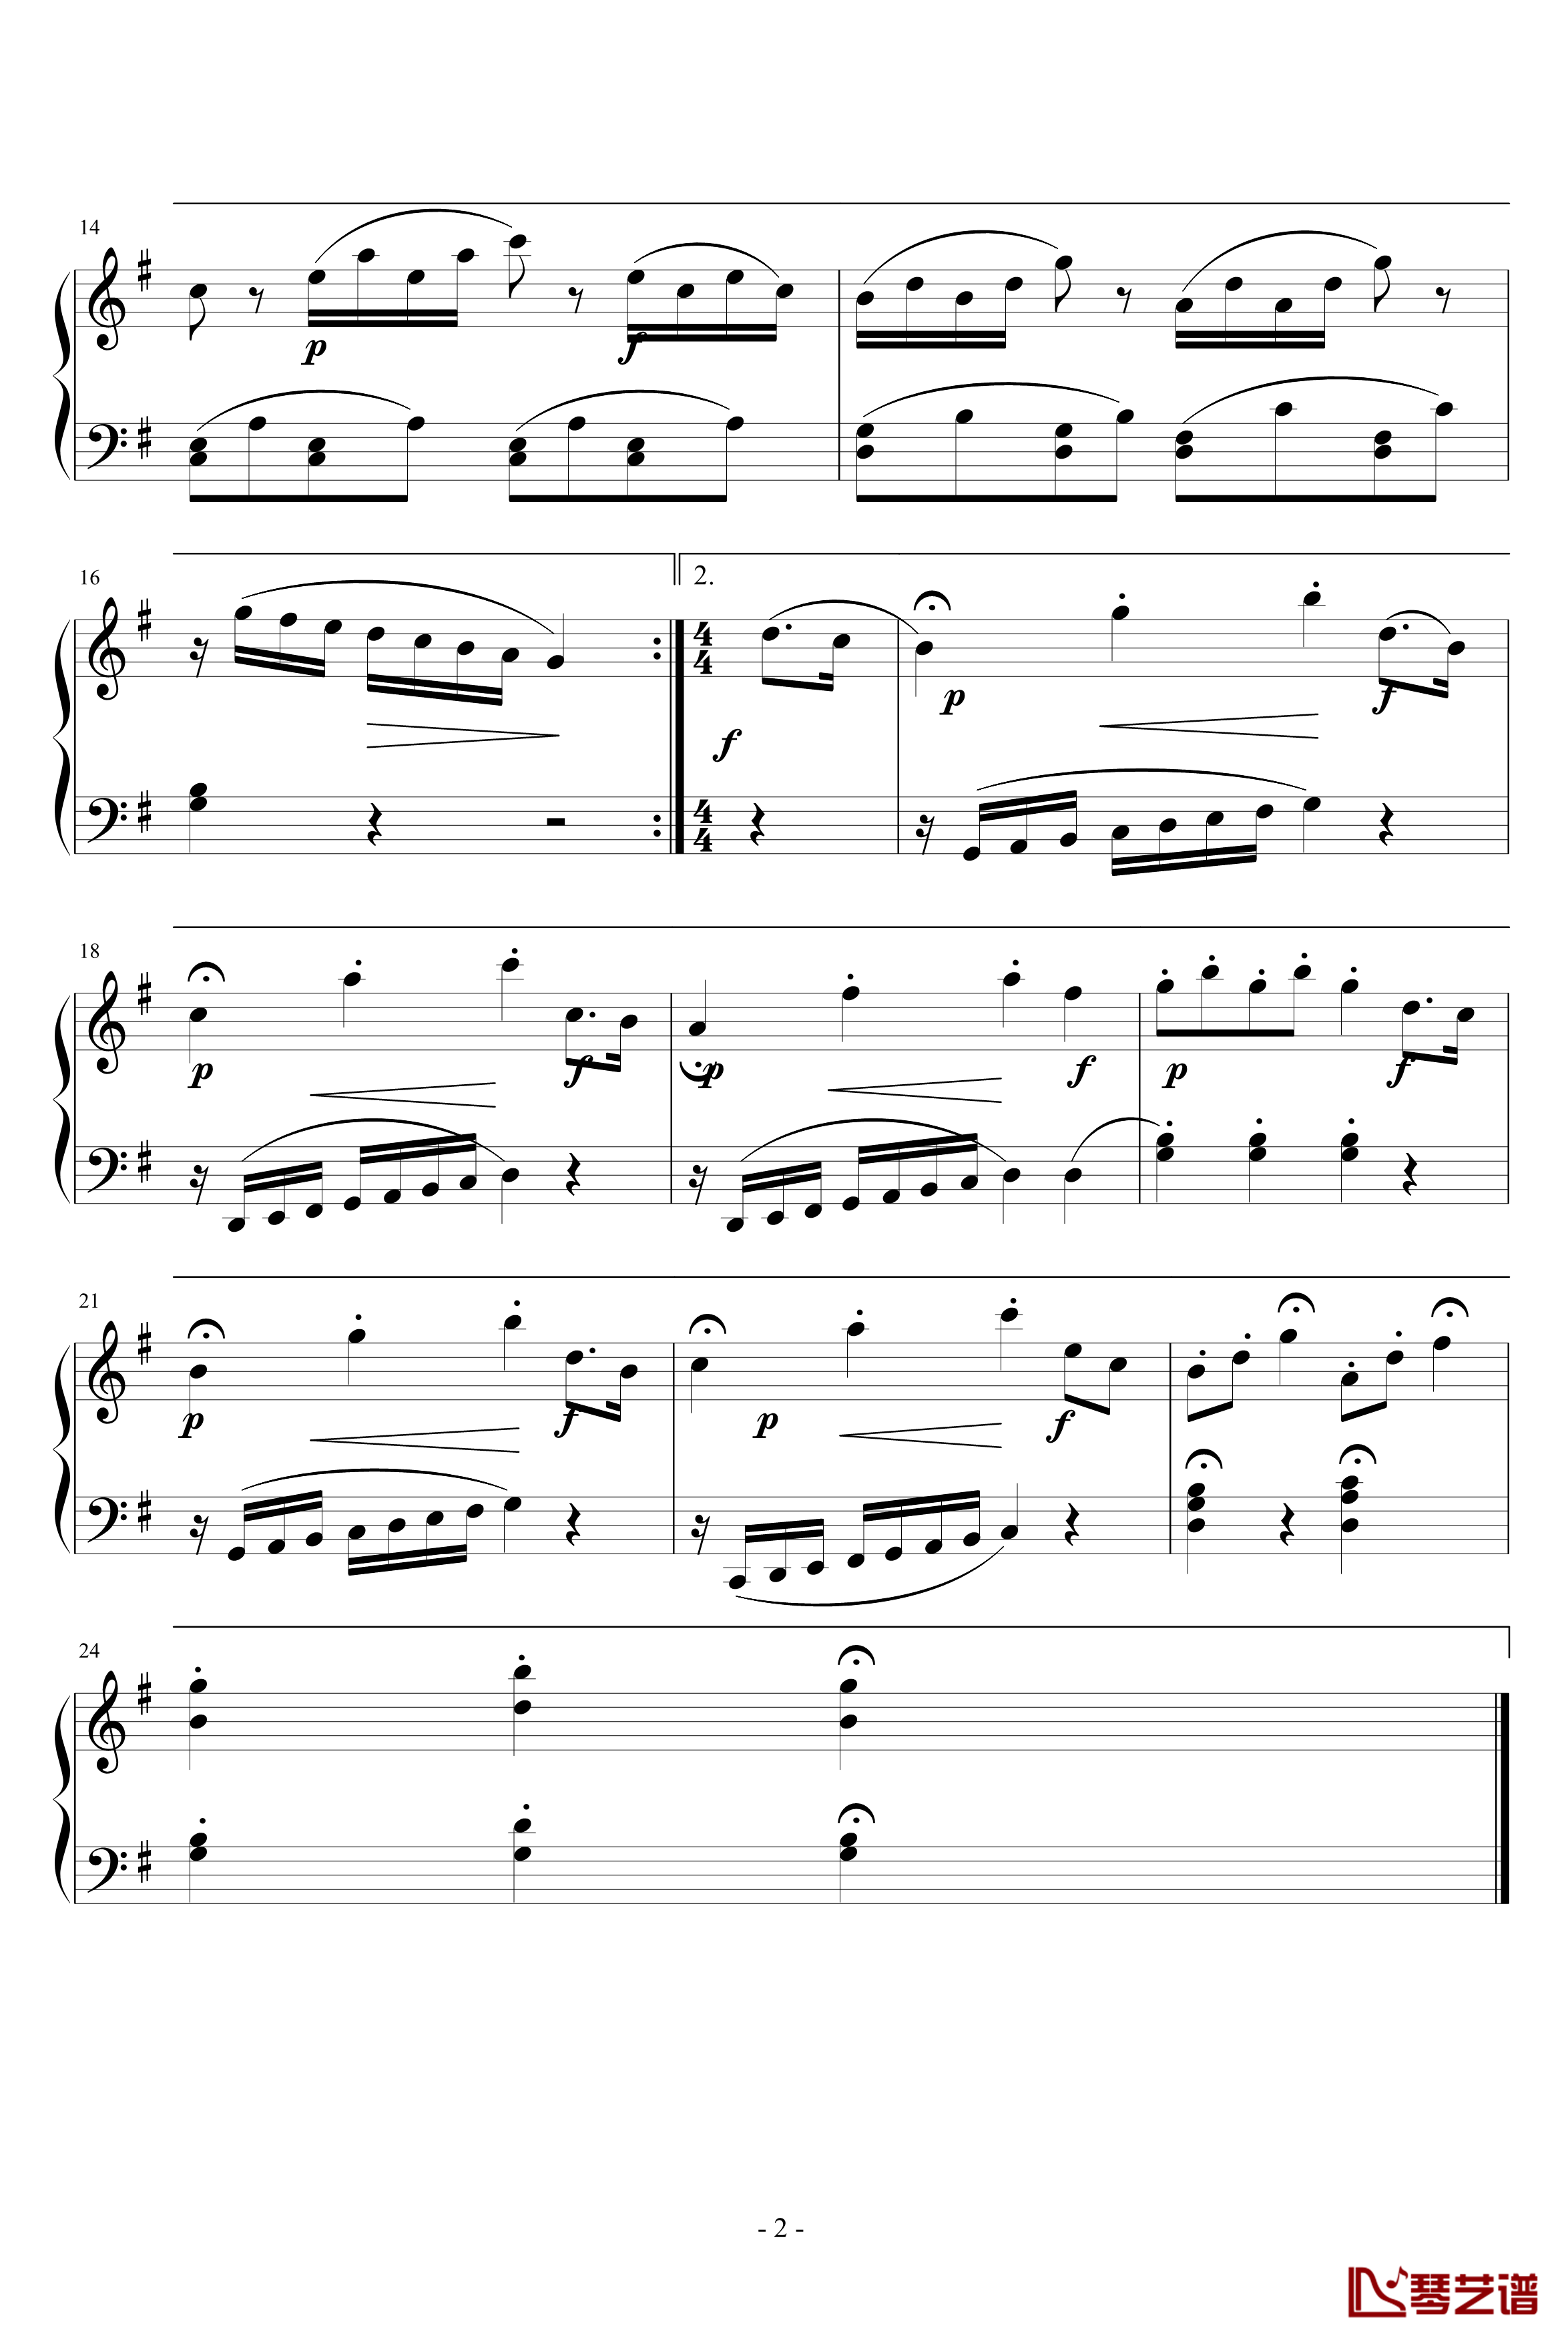 《魔笛》主题变奏曲钢琴谱-莫扎特-歌剧2